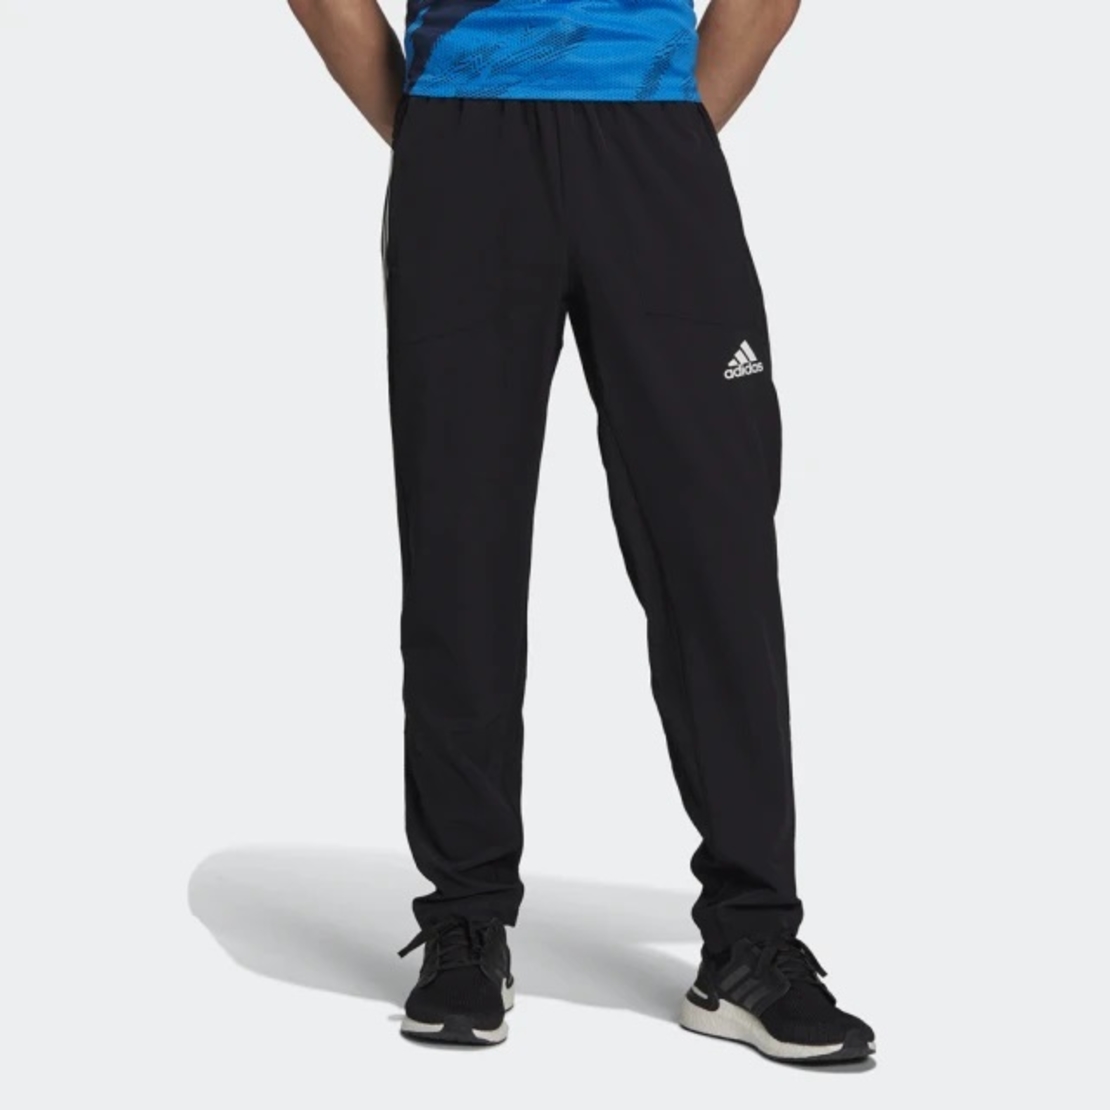 מכנס אדידס ניילון לגבר | Adidas Tiro Woven Pant